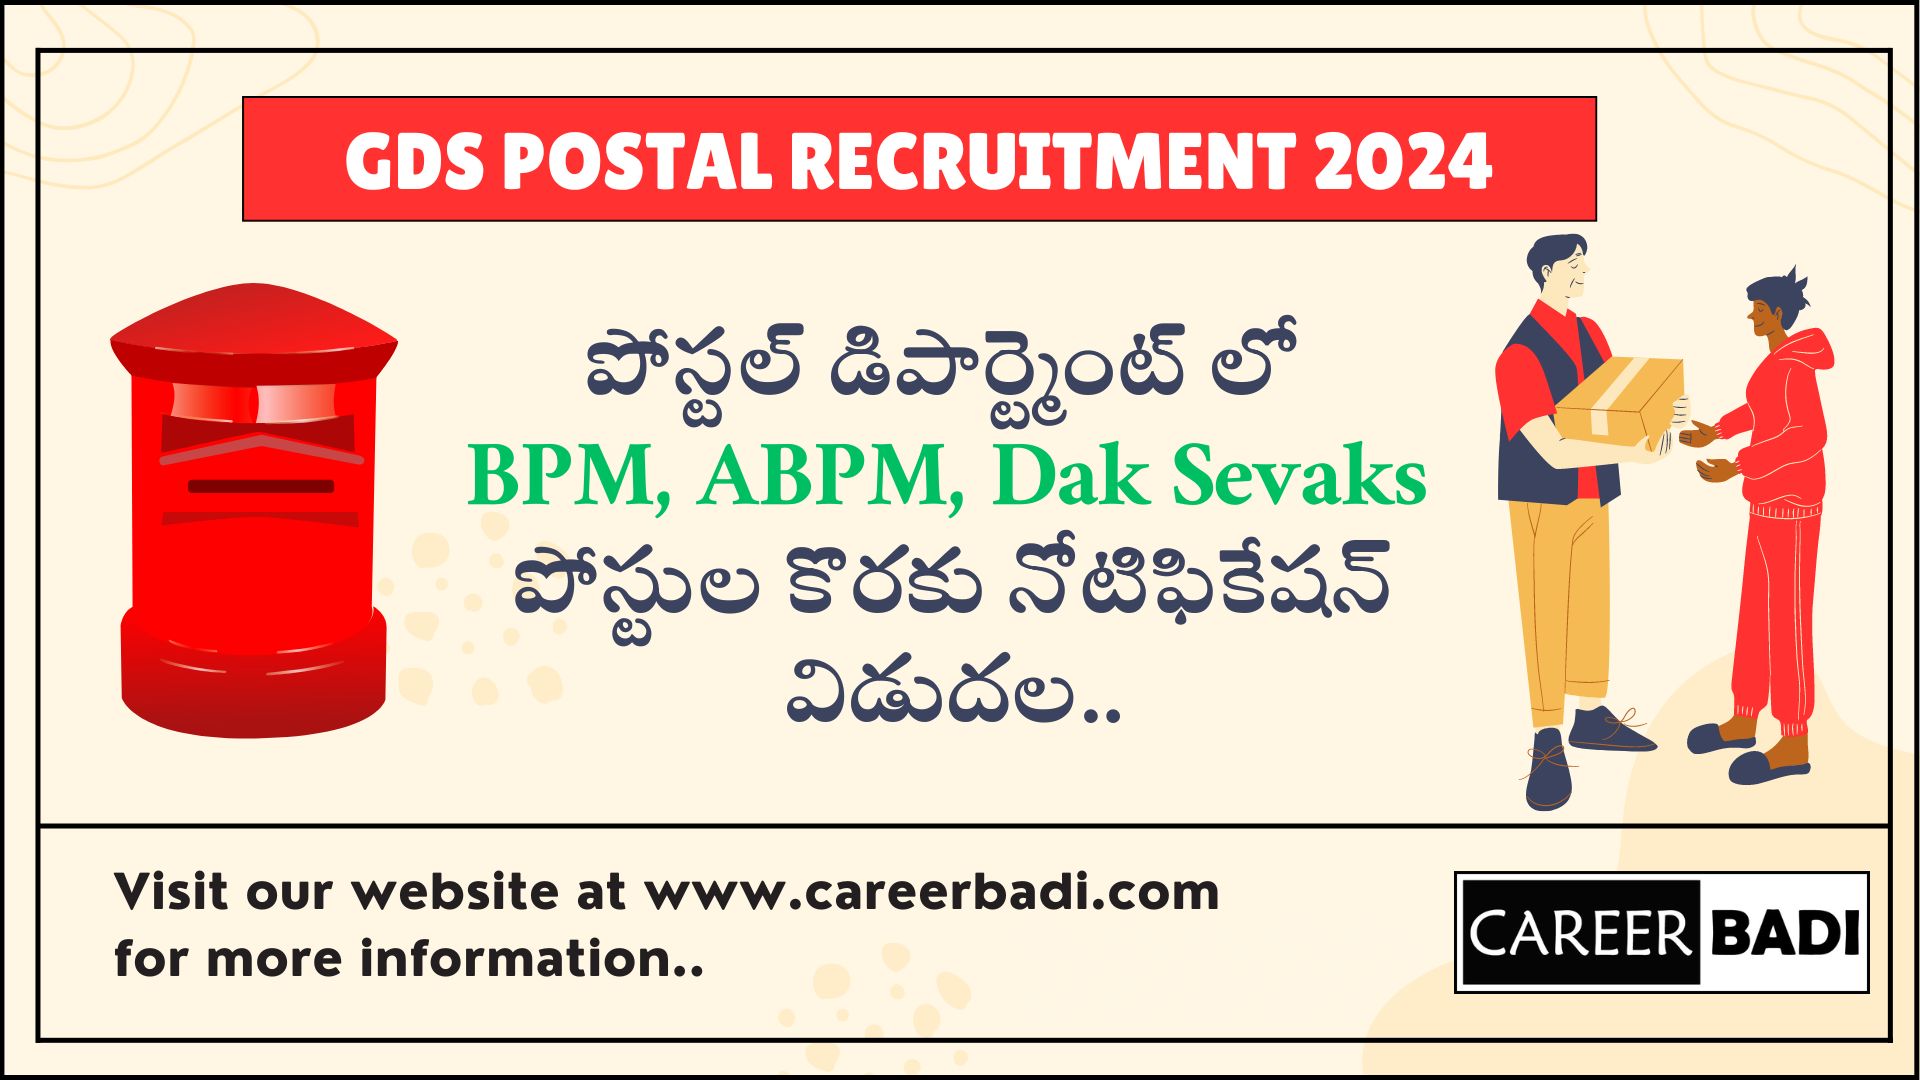 Post Office GDS Recruitment 2024 in Telugu